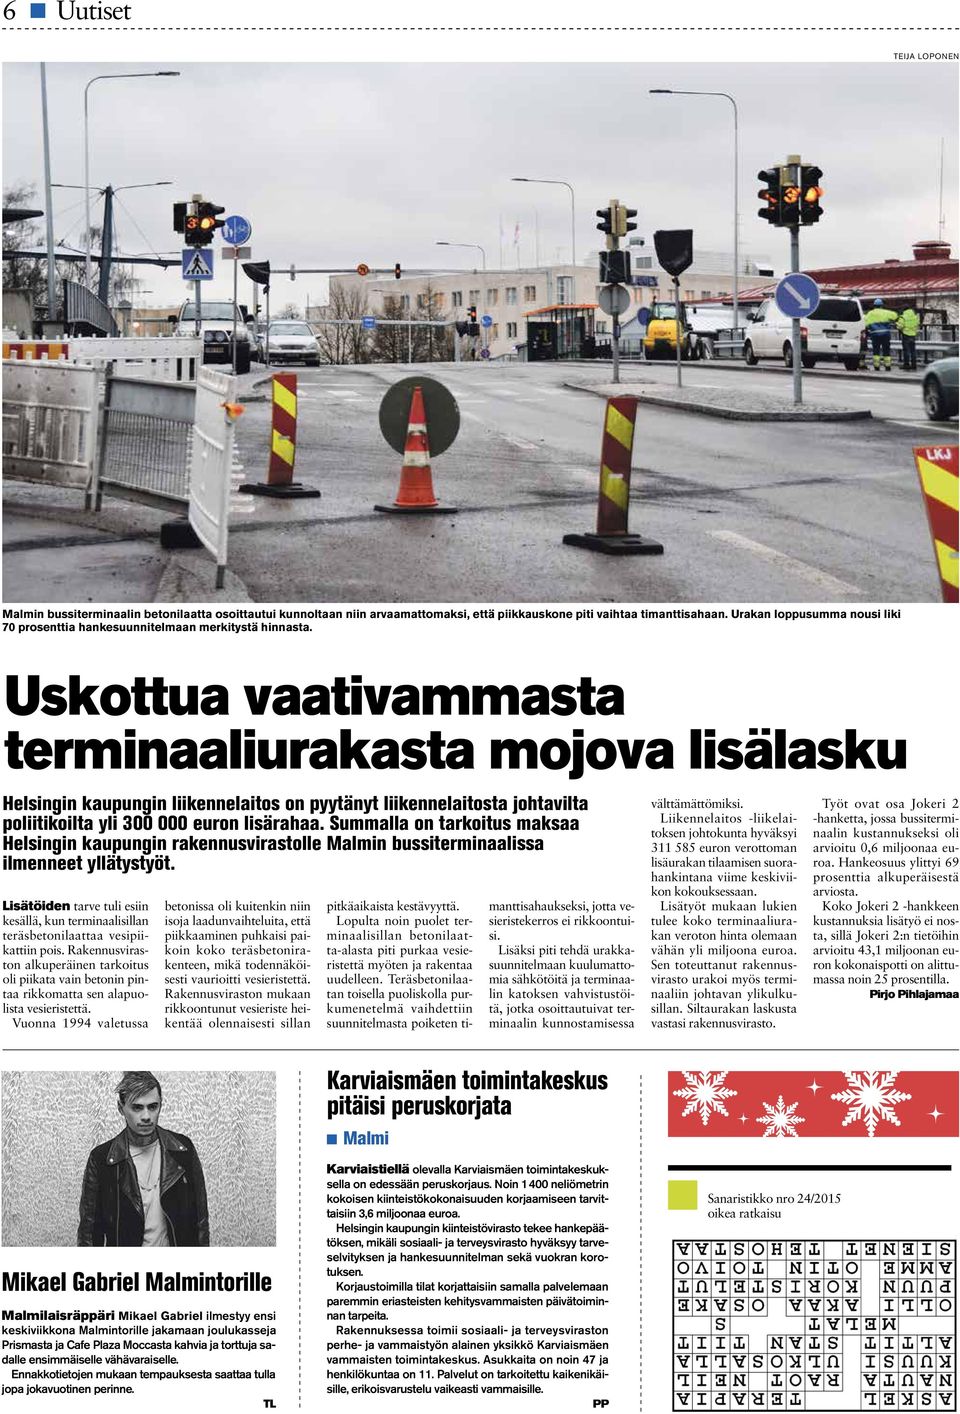 Uskottua vaativammasta terminaaliurakasta mojova lisälasku Helsingin kaupungin liikennelaitos on pyytänyt liikennelaitosta johtavilta poliitikoilta yli 300 000 euron lisärahaa.